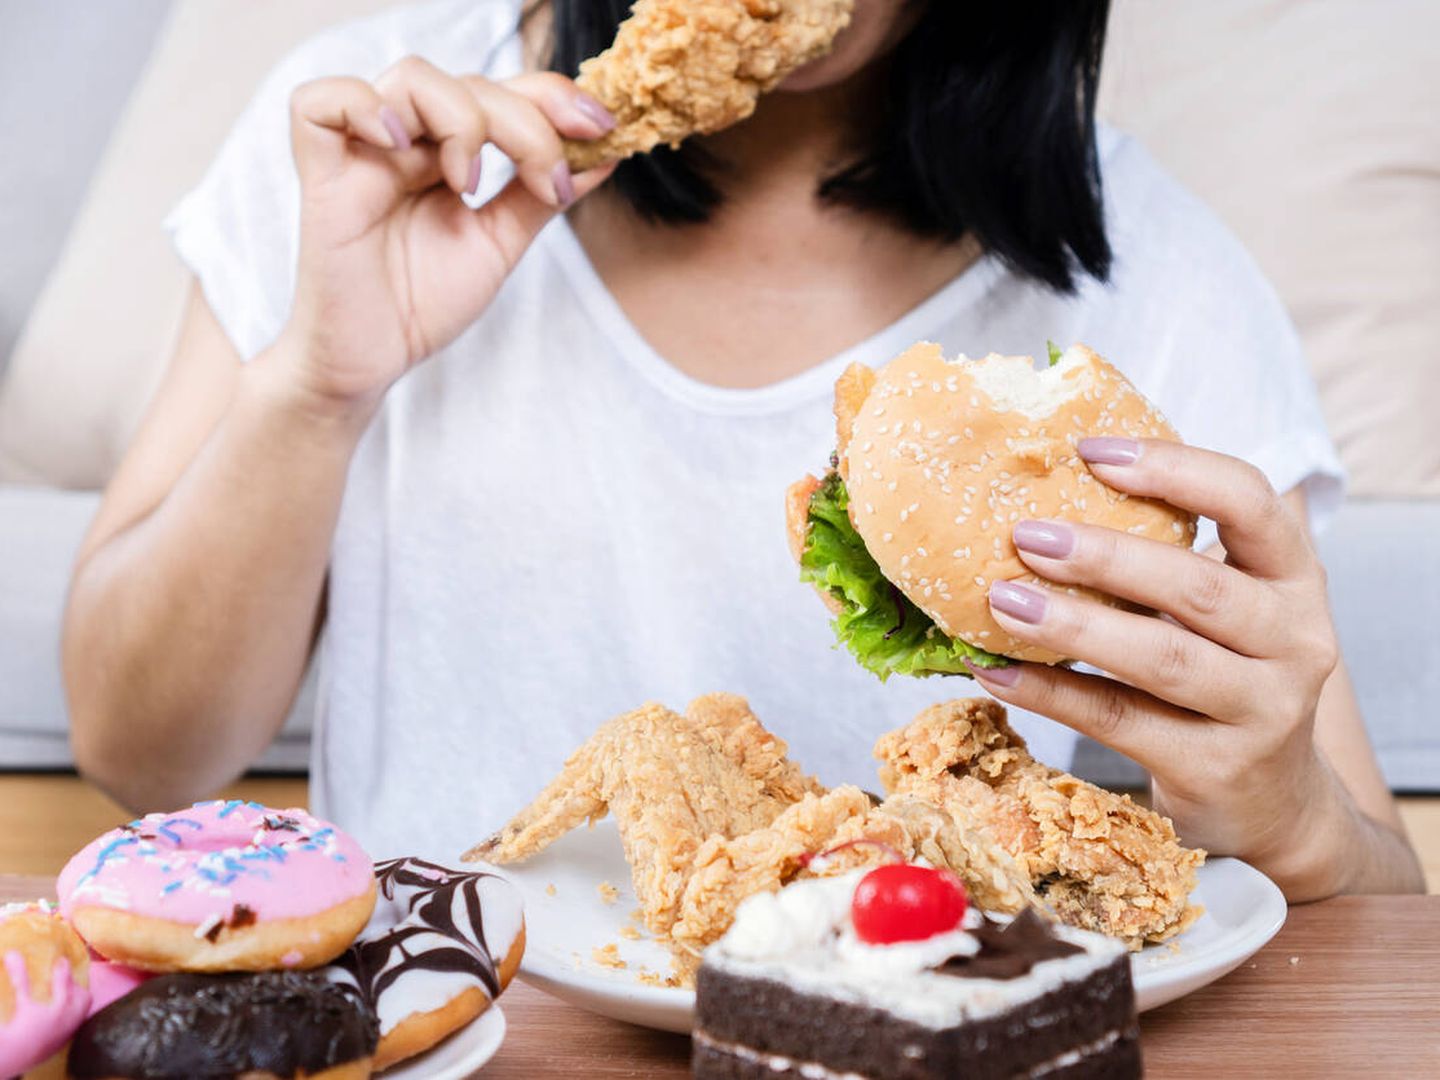 Si no comes a horas regulares es más probable que te cueste controlar el apetito. (iStock)